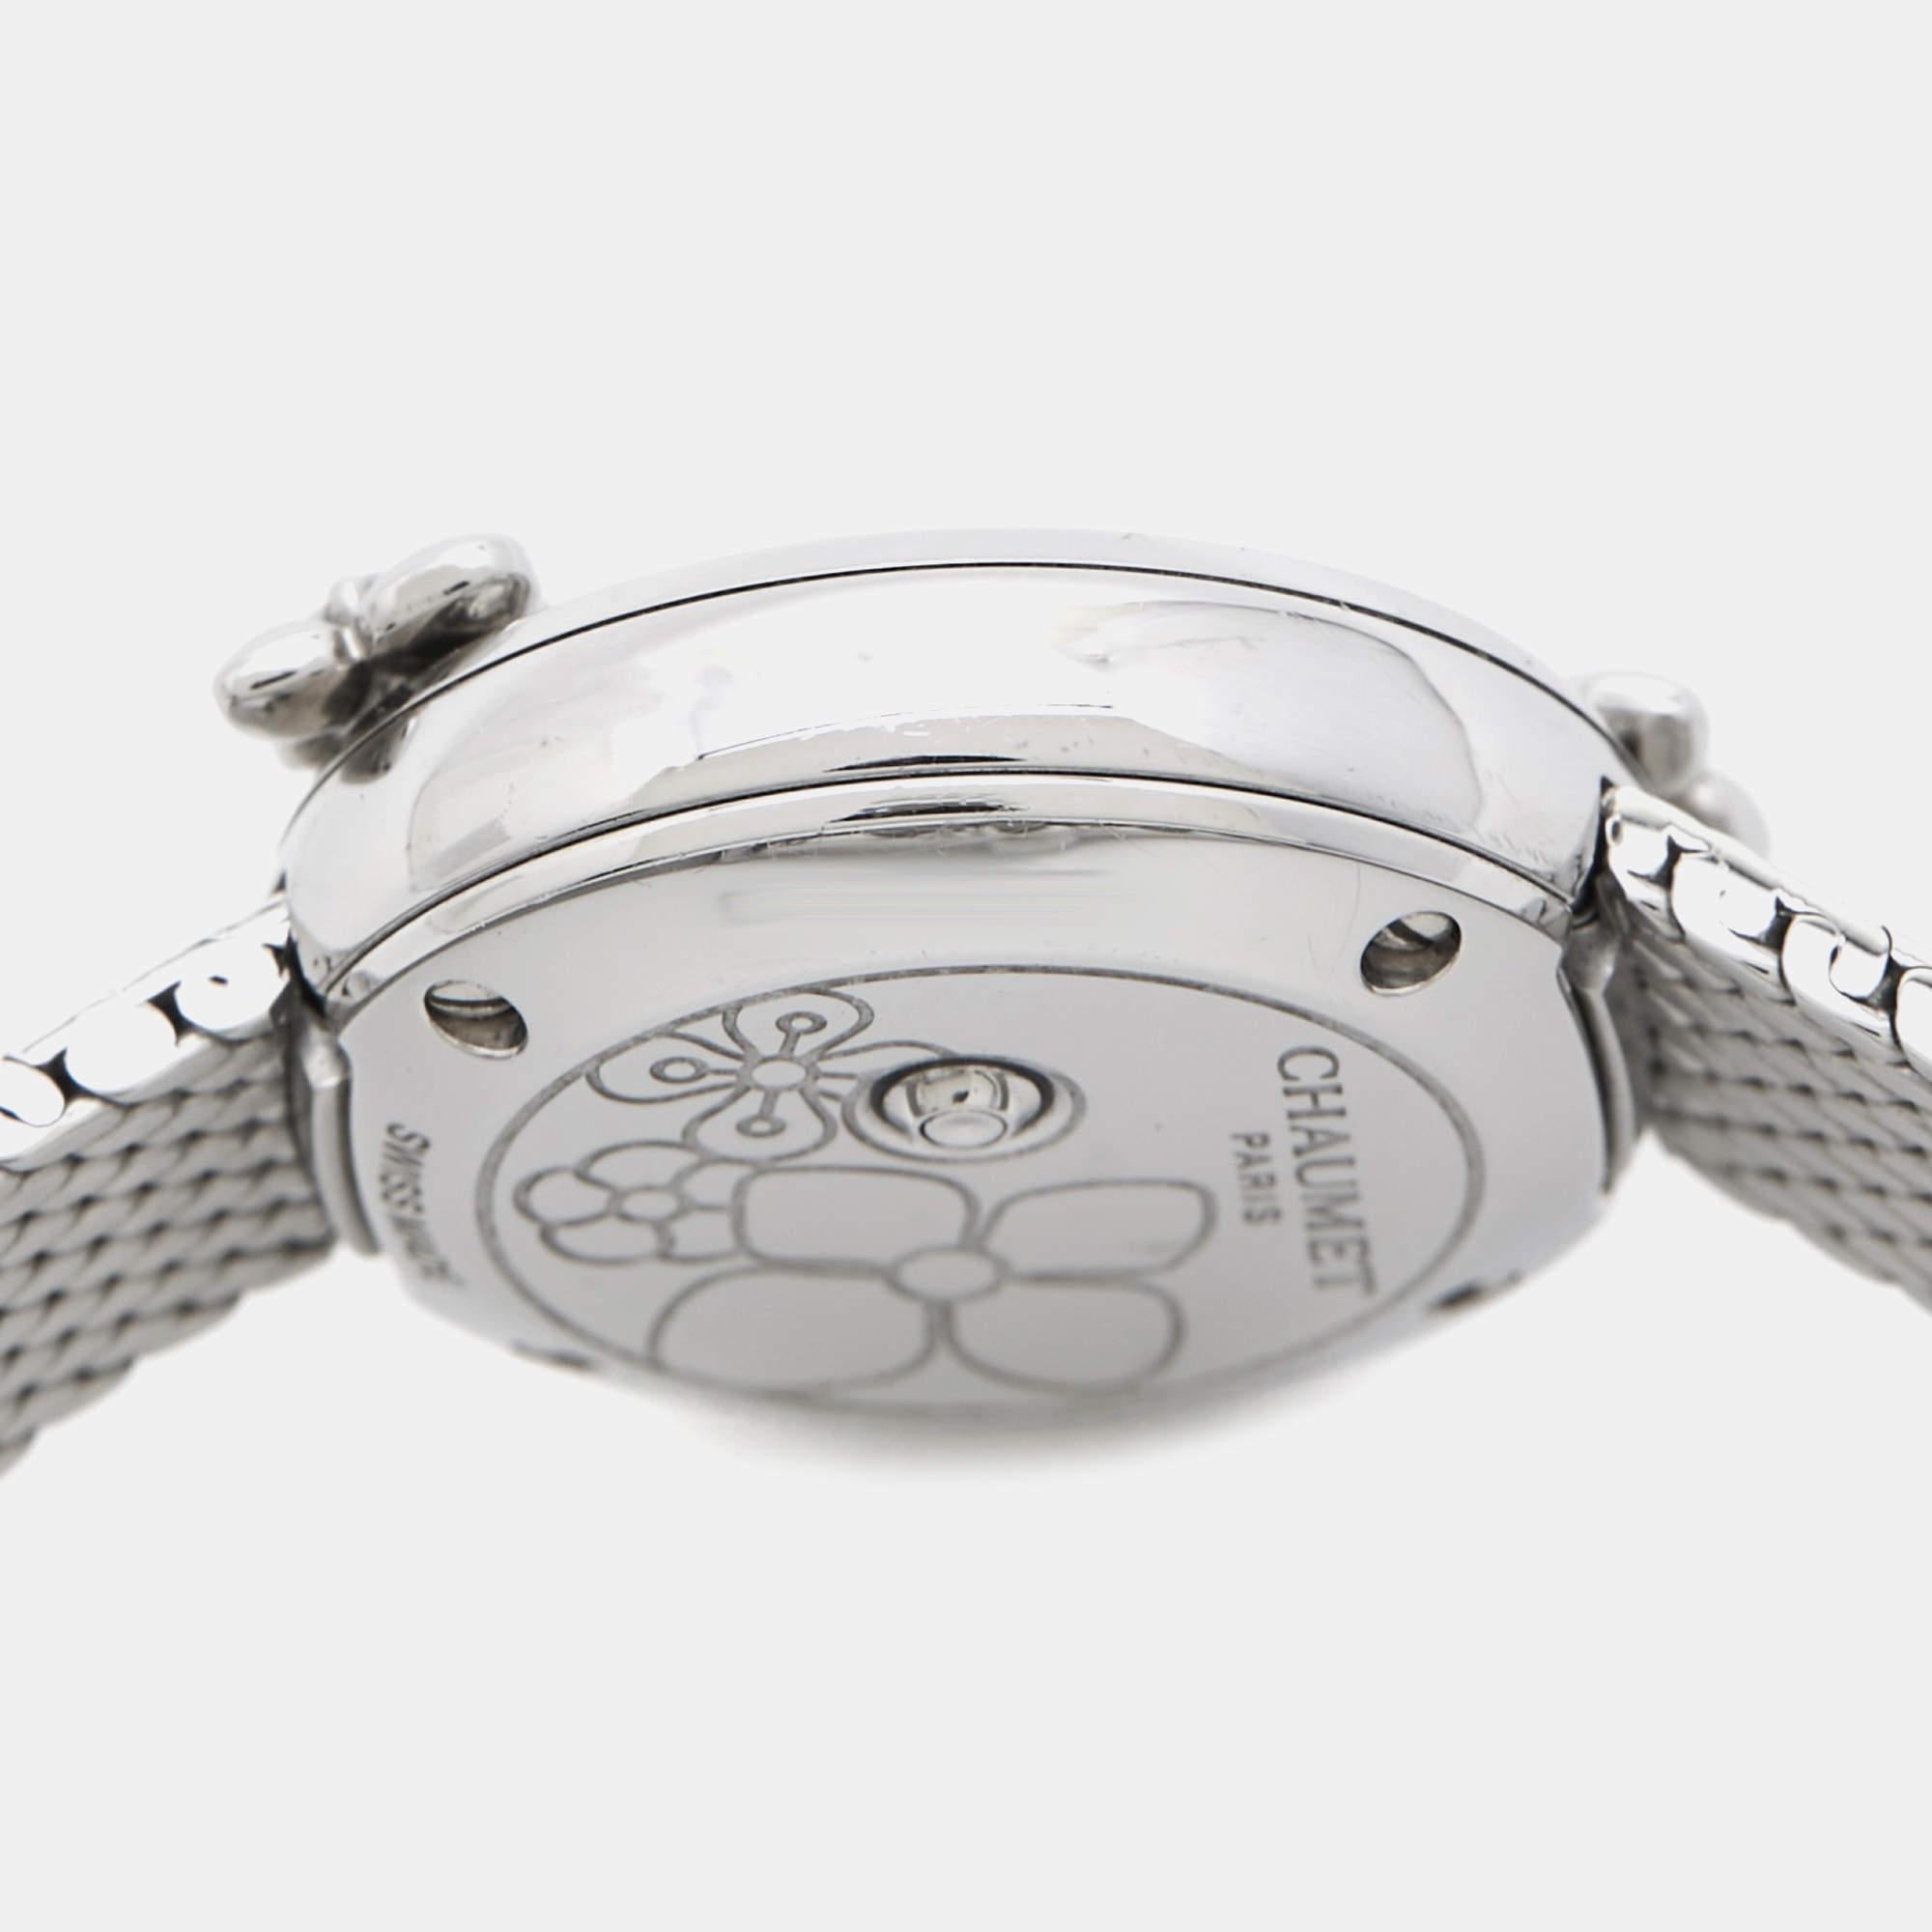 Chaumet Montre-bracelet pour femme Hortensia W20611-20W en acier inoxydable blanc et diamants 22 1